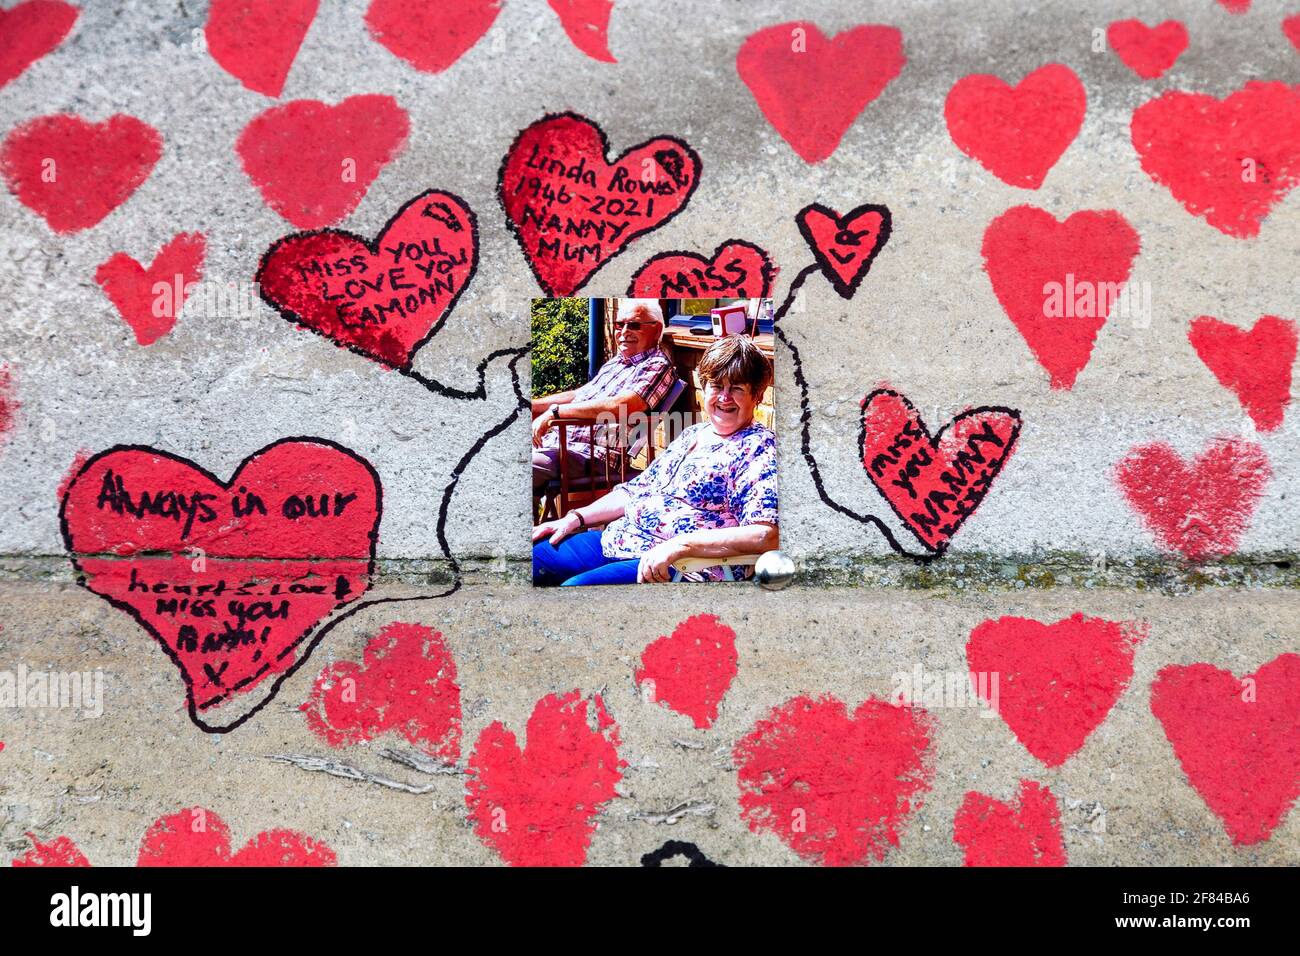 11 aprile 2021, Londra, Regno Unito - Foto e cuori disegnati sul National COVID Memorial Wall lungo la South Bank come tributo a coloro che sono morti durante la pandemia del coronavirus Foto Stock